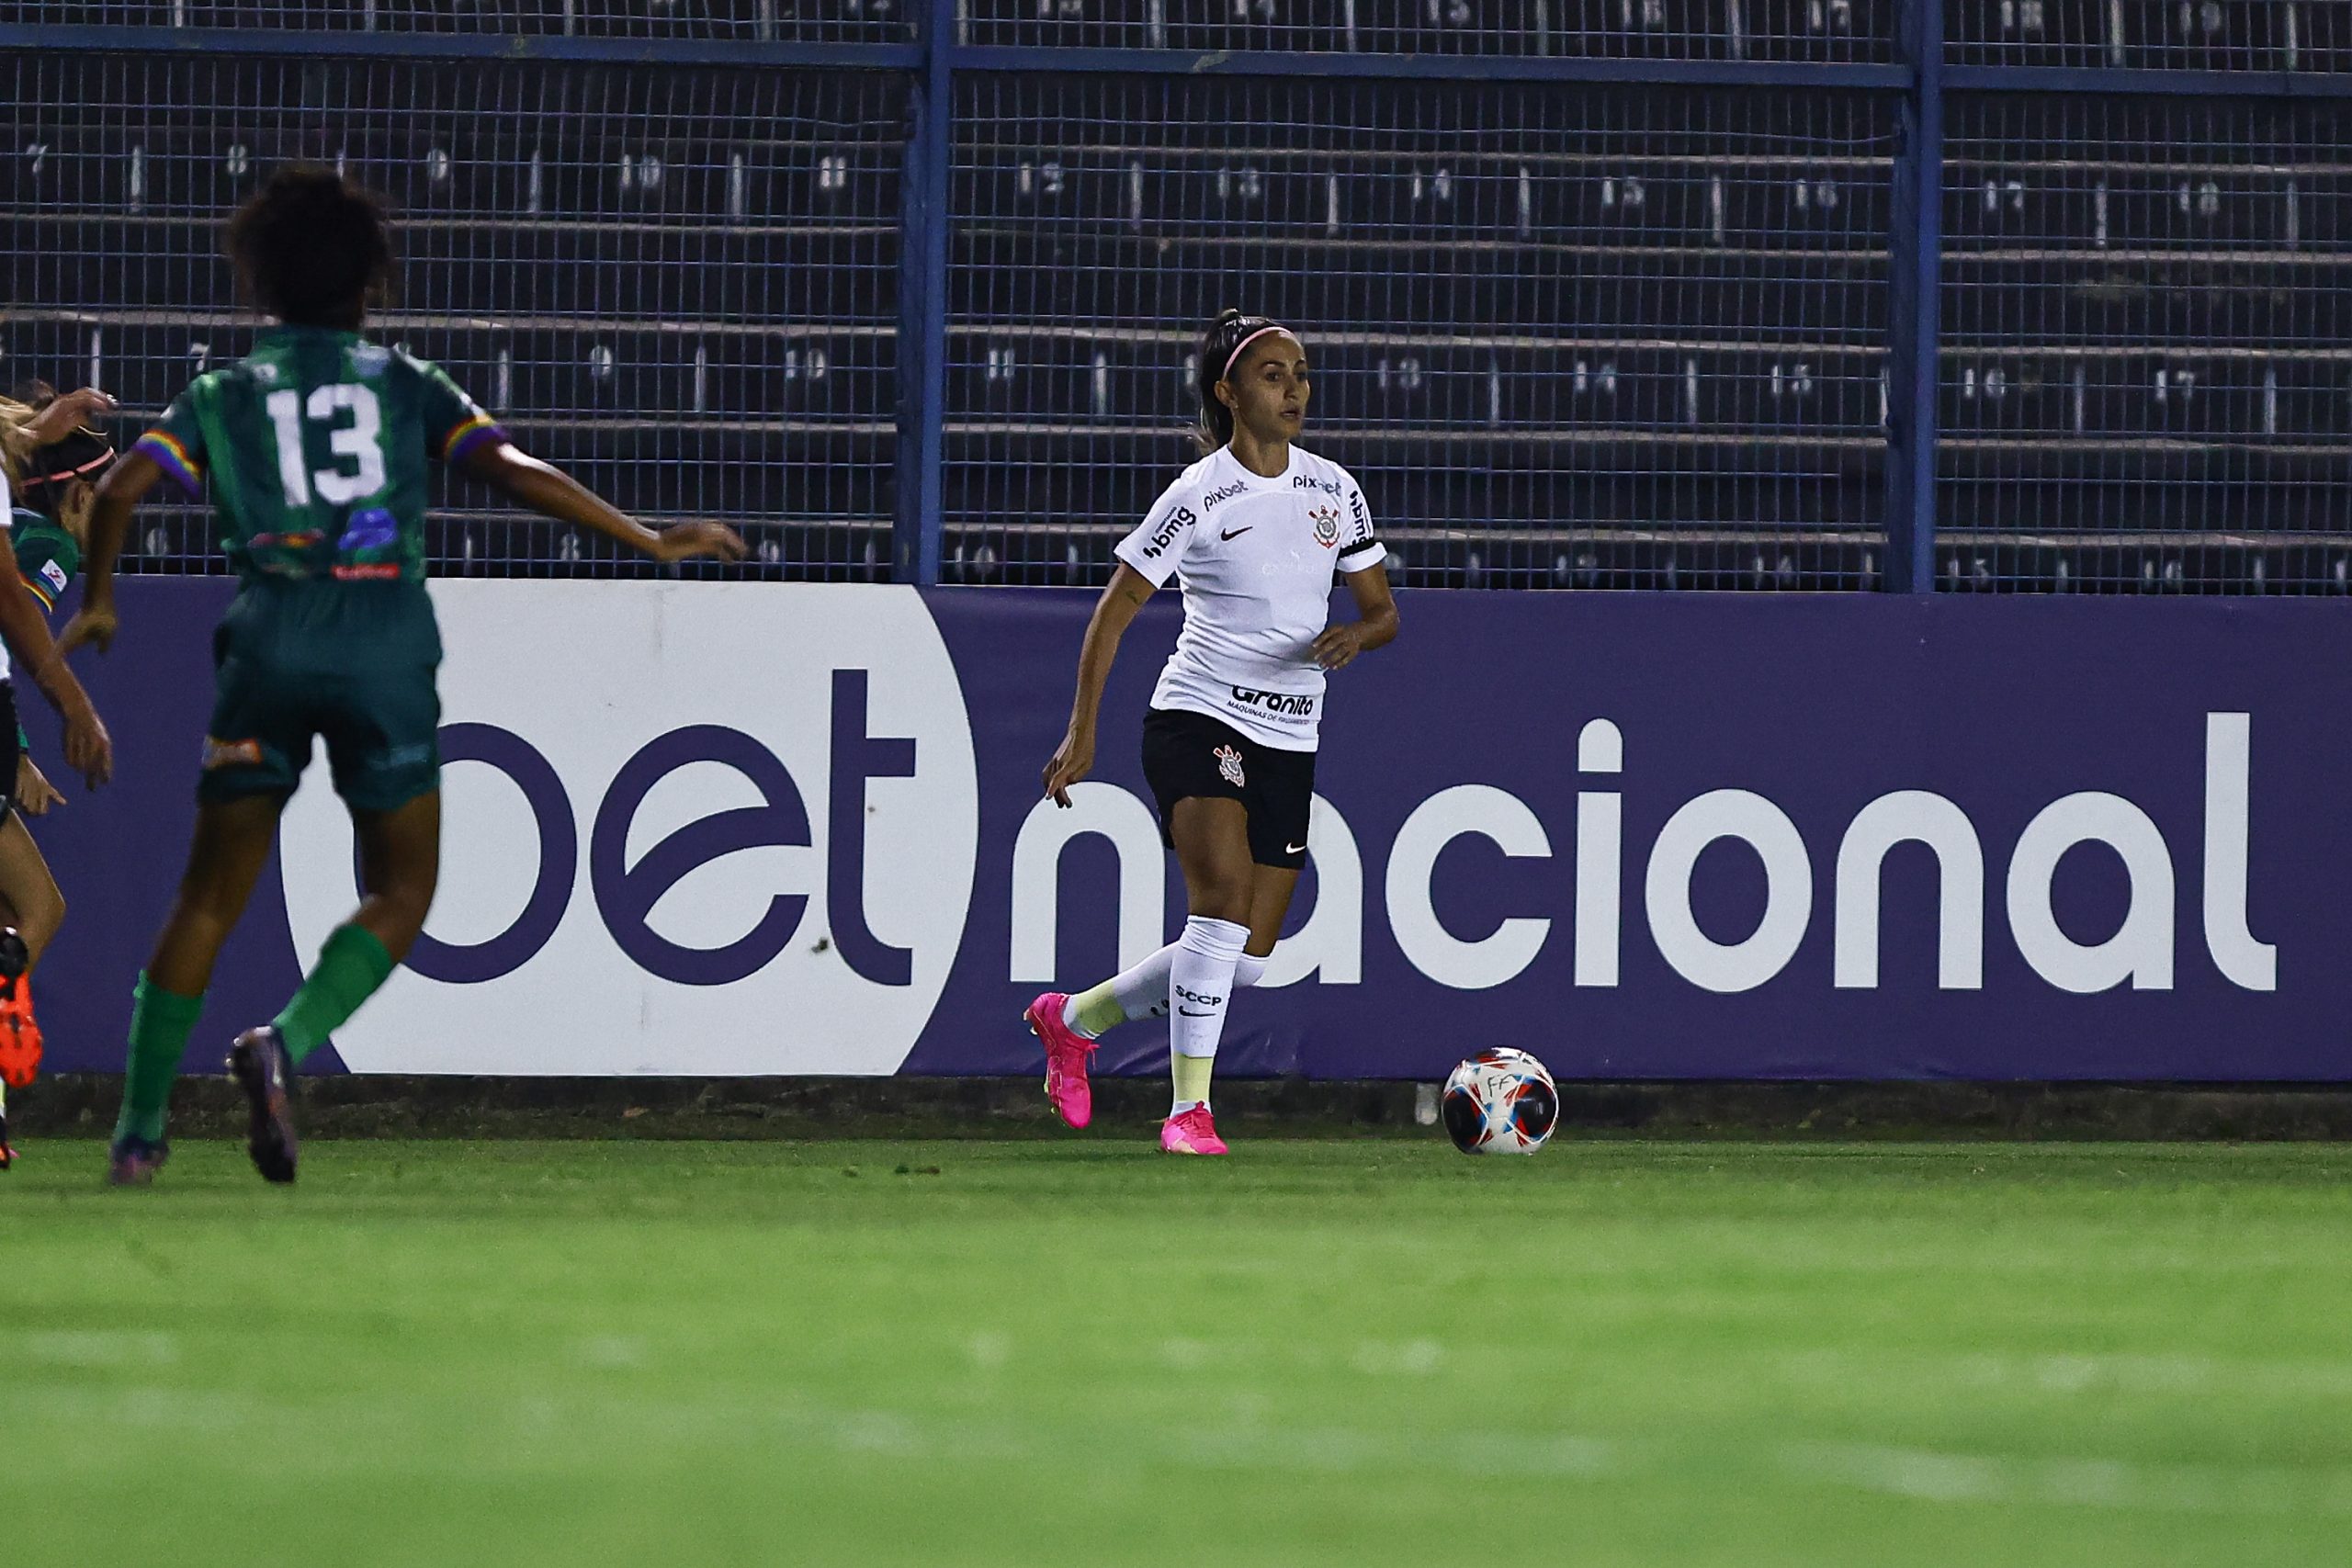 Diany analisa jogo do Corinthians em primeira partida da final da Copa Paulista  Feminina